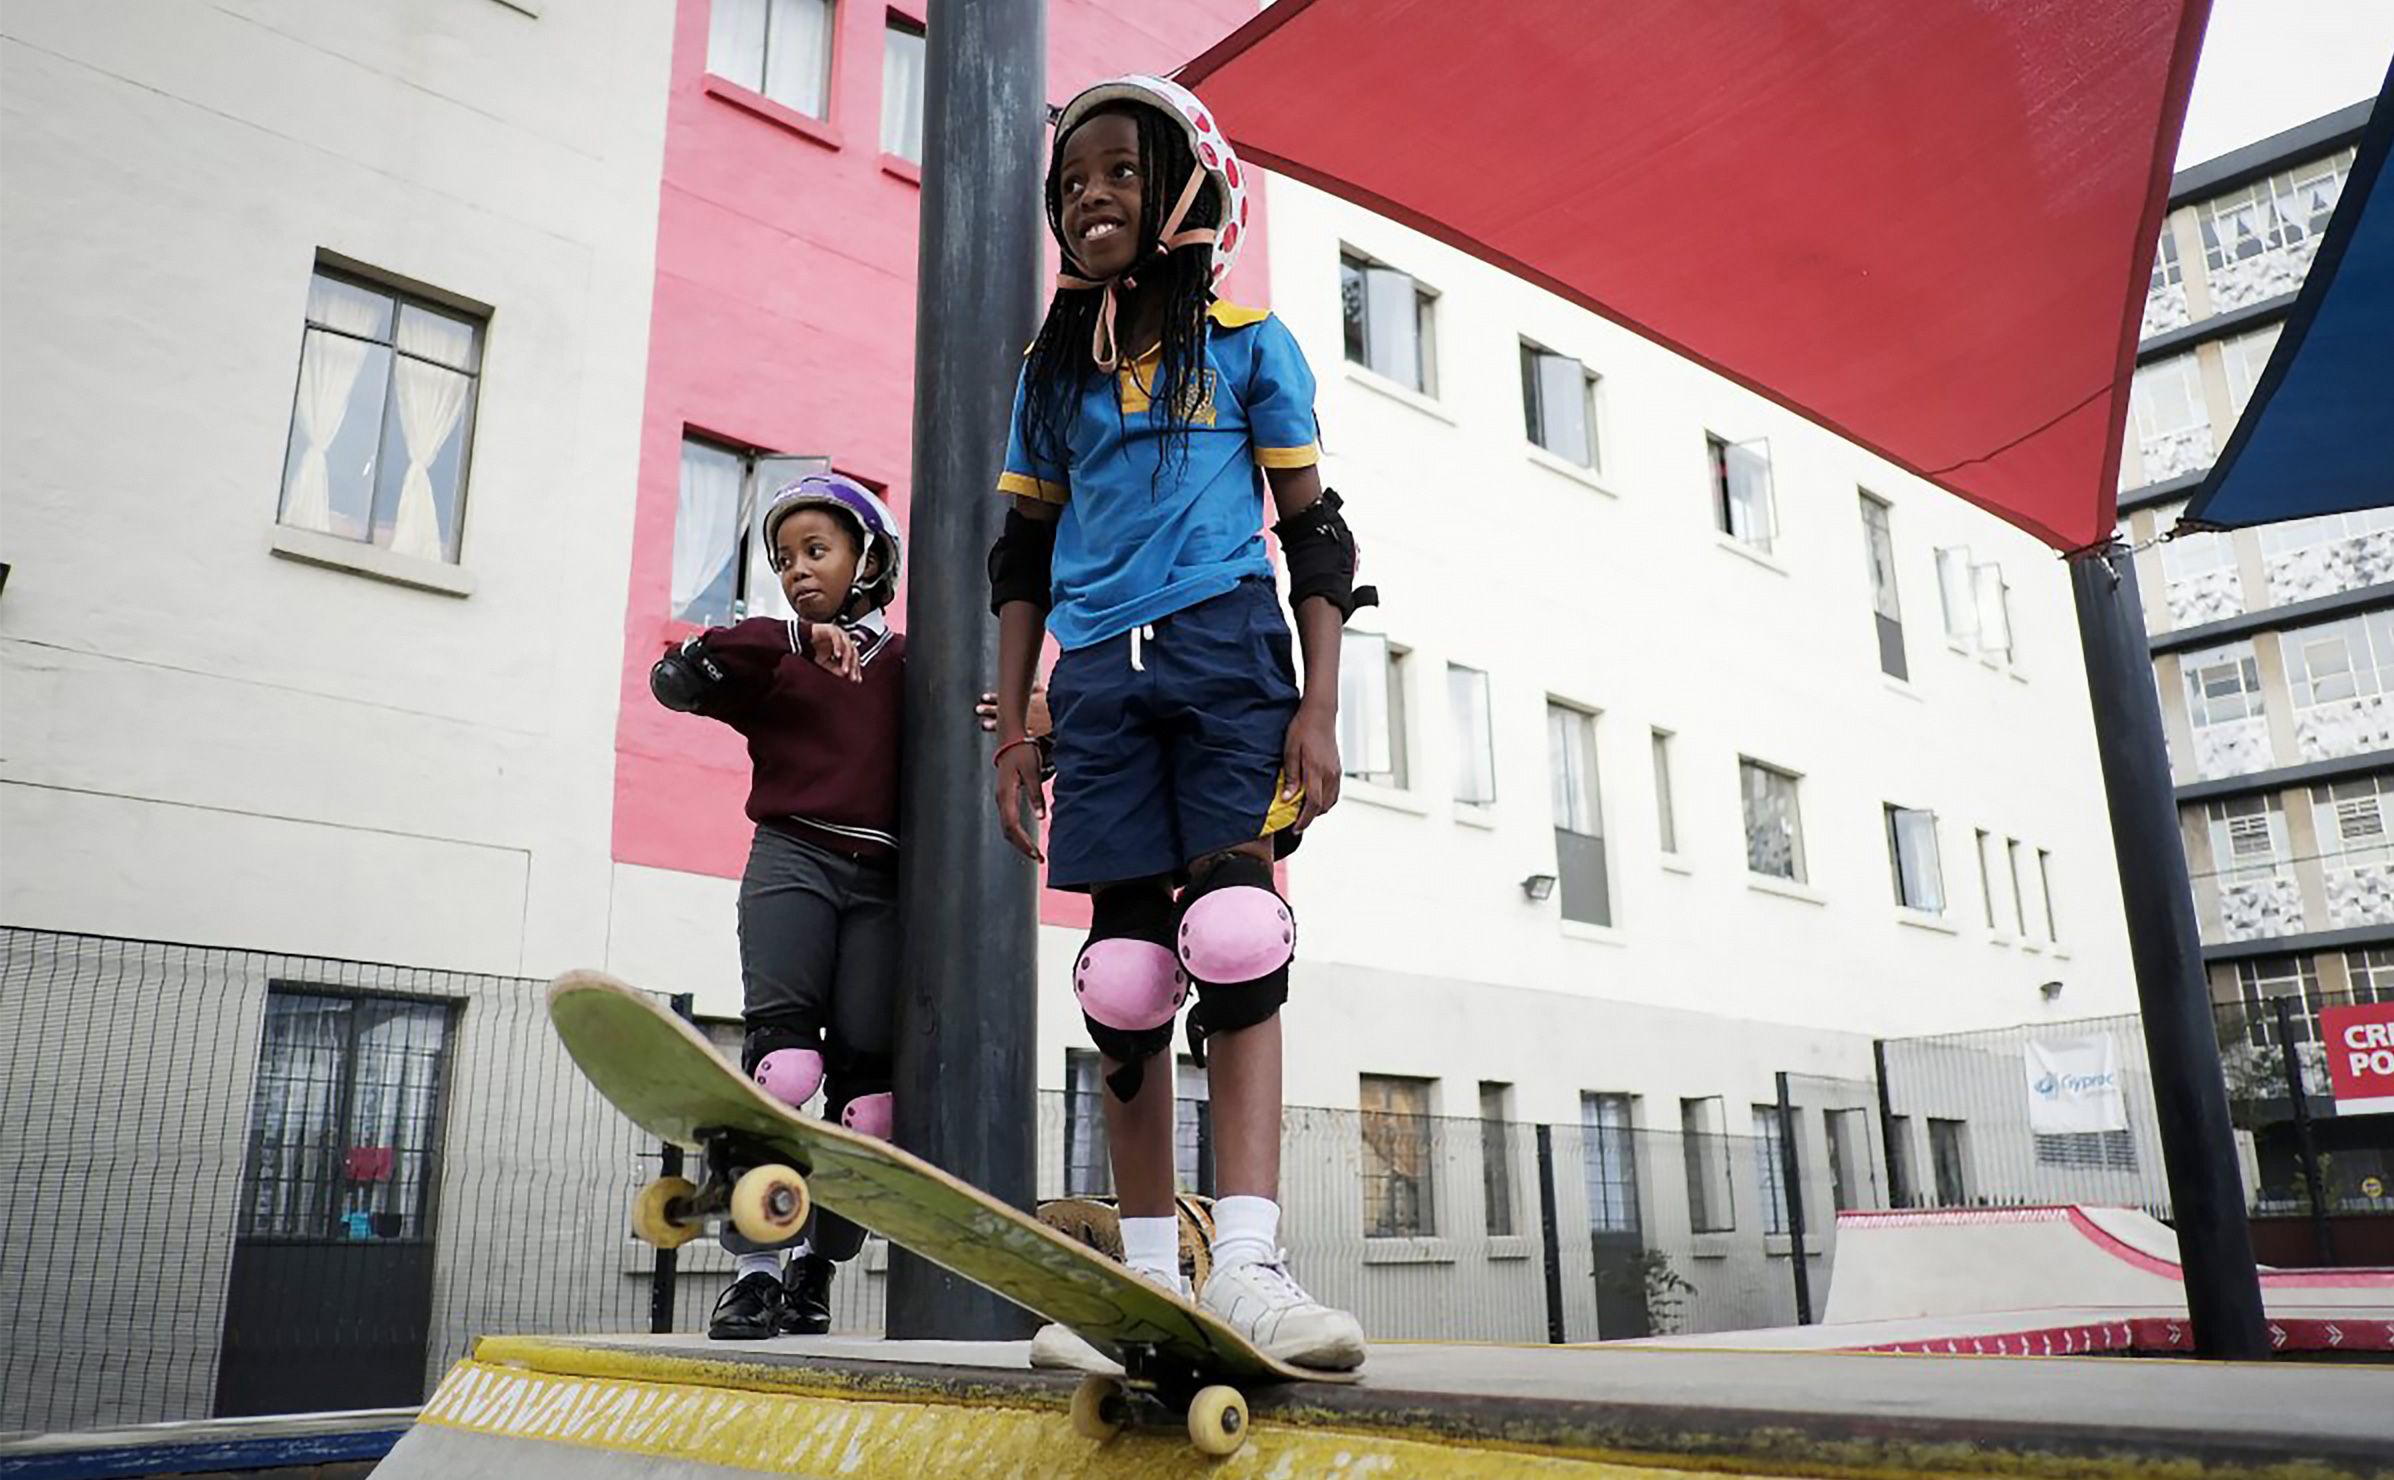 Girl skaters in Johannesburg in 2018